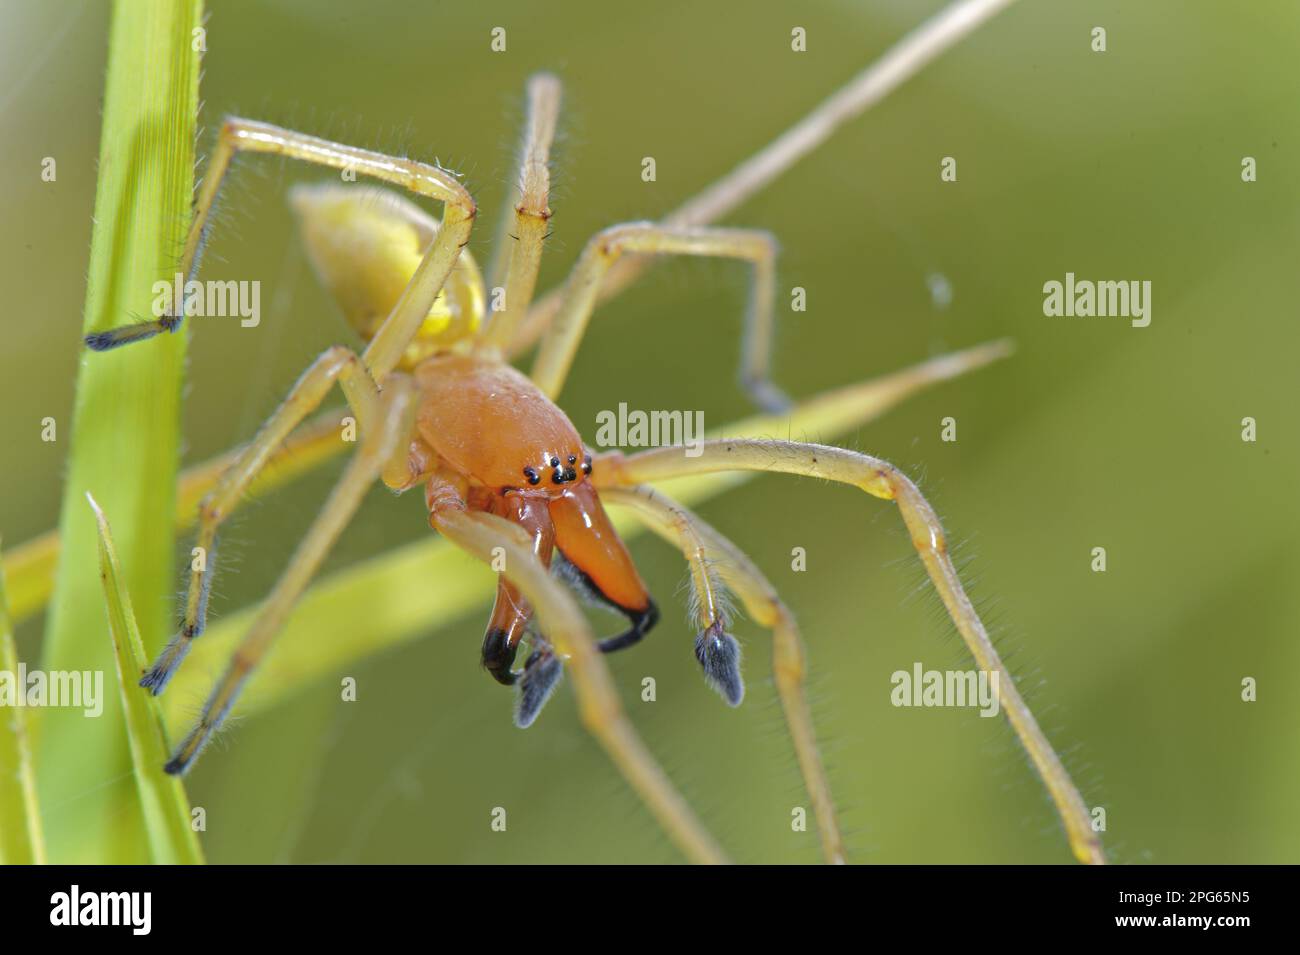 Yellow sac spider (Cheiracanthium punctorium), Ammendorn finger, Other animals, Spiders, Arachnids, Animals, Bag spiders, Yellow Sac Spider adult Stock Photo